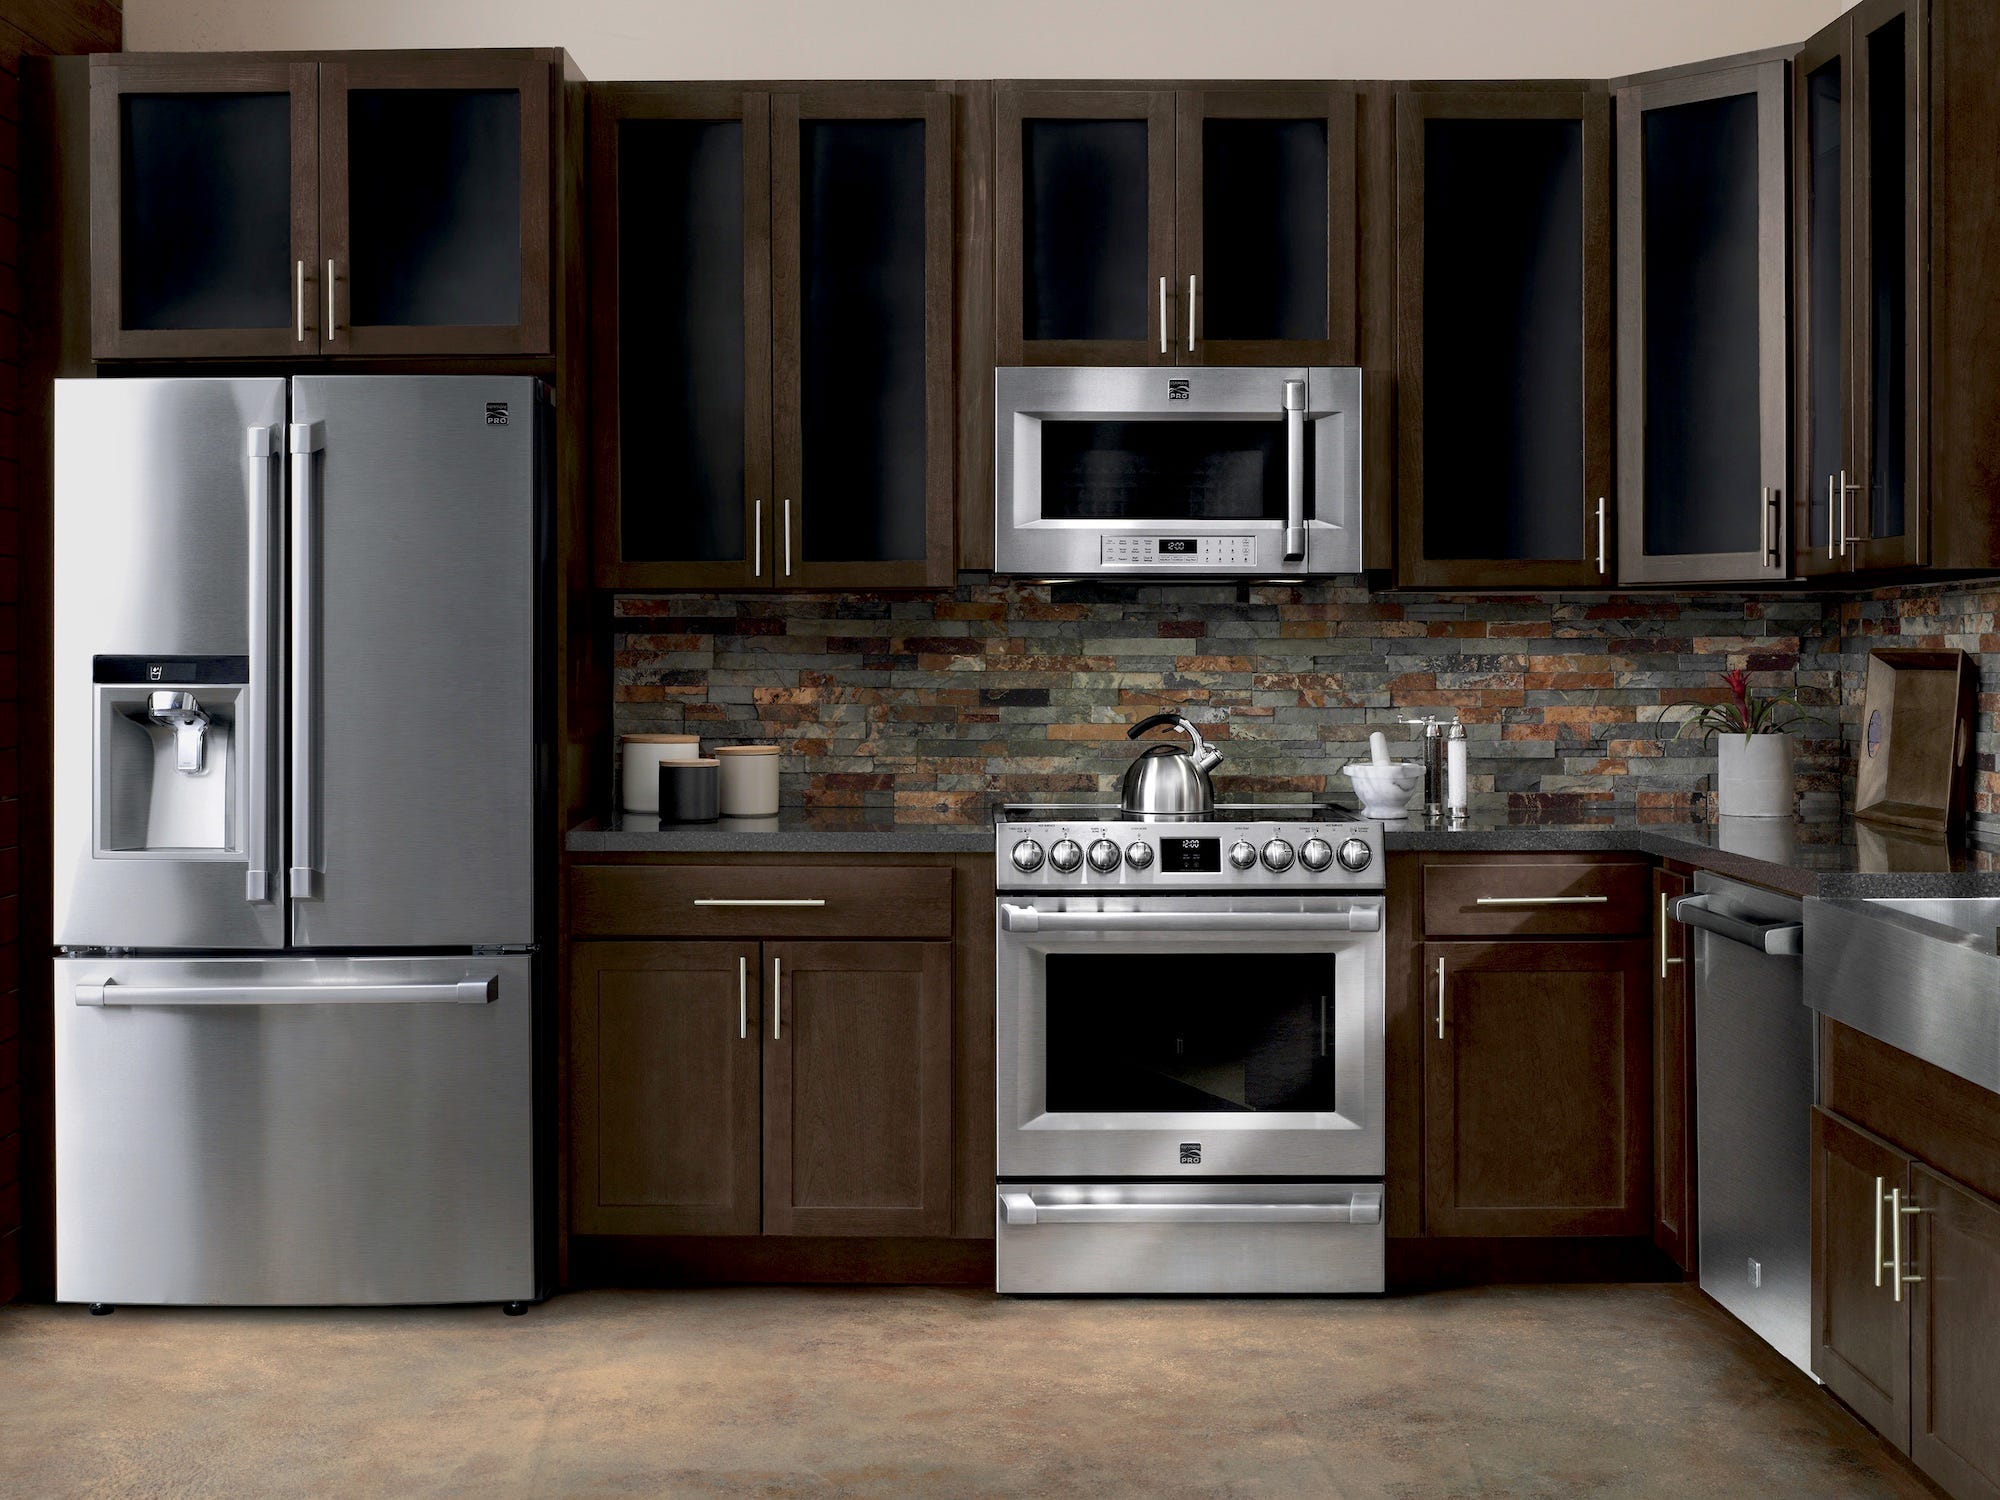 Bild von Kemore Pro-Geräten in einer braunen Küche, Sears Appliance Deals 2022